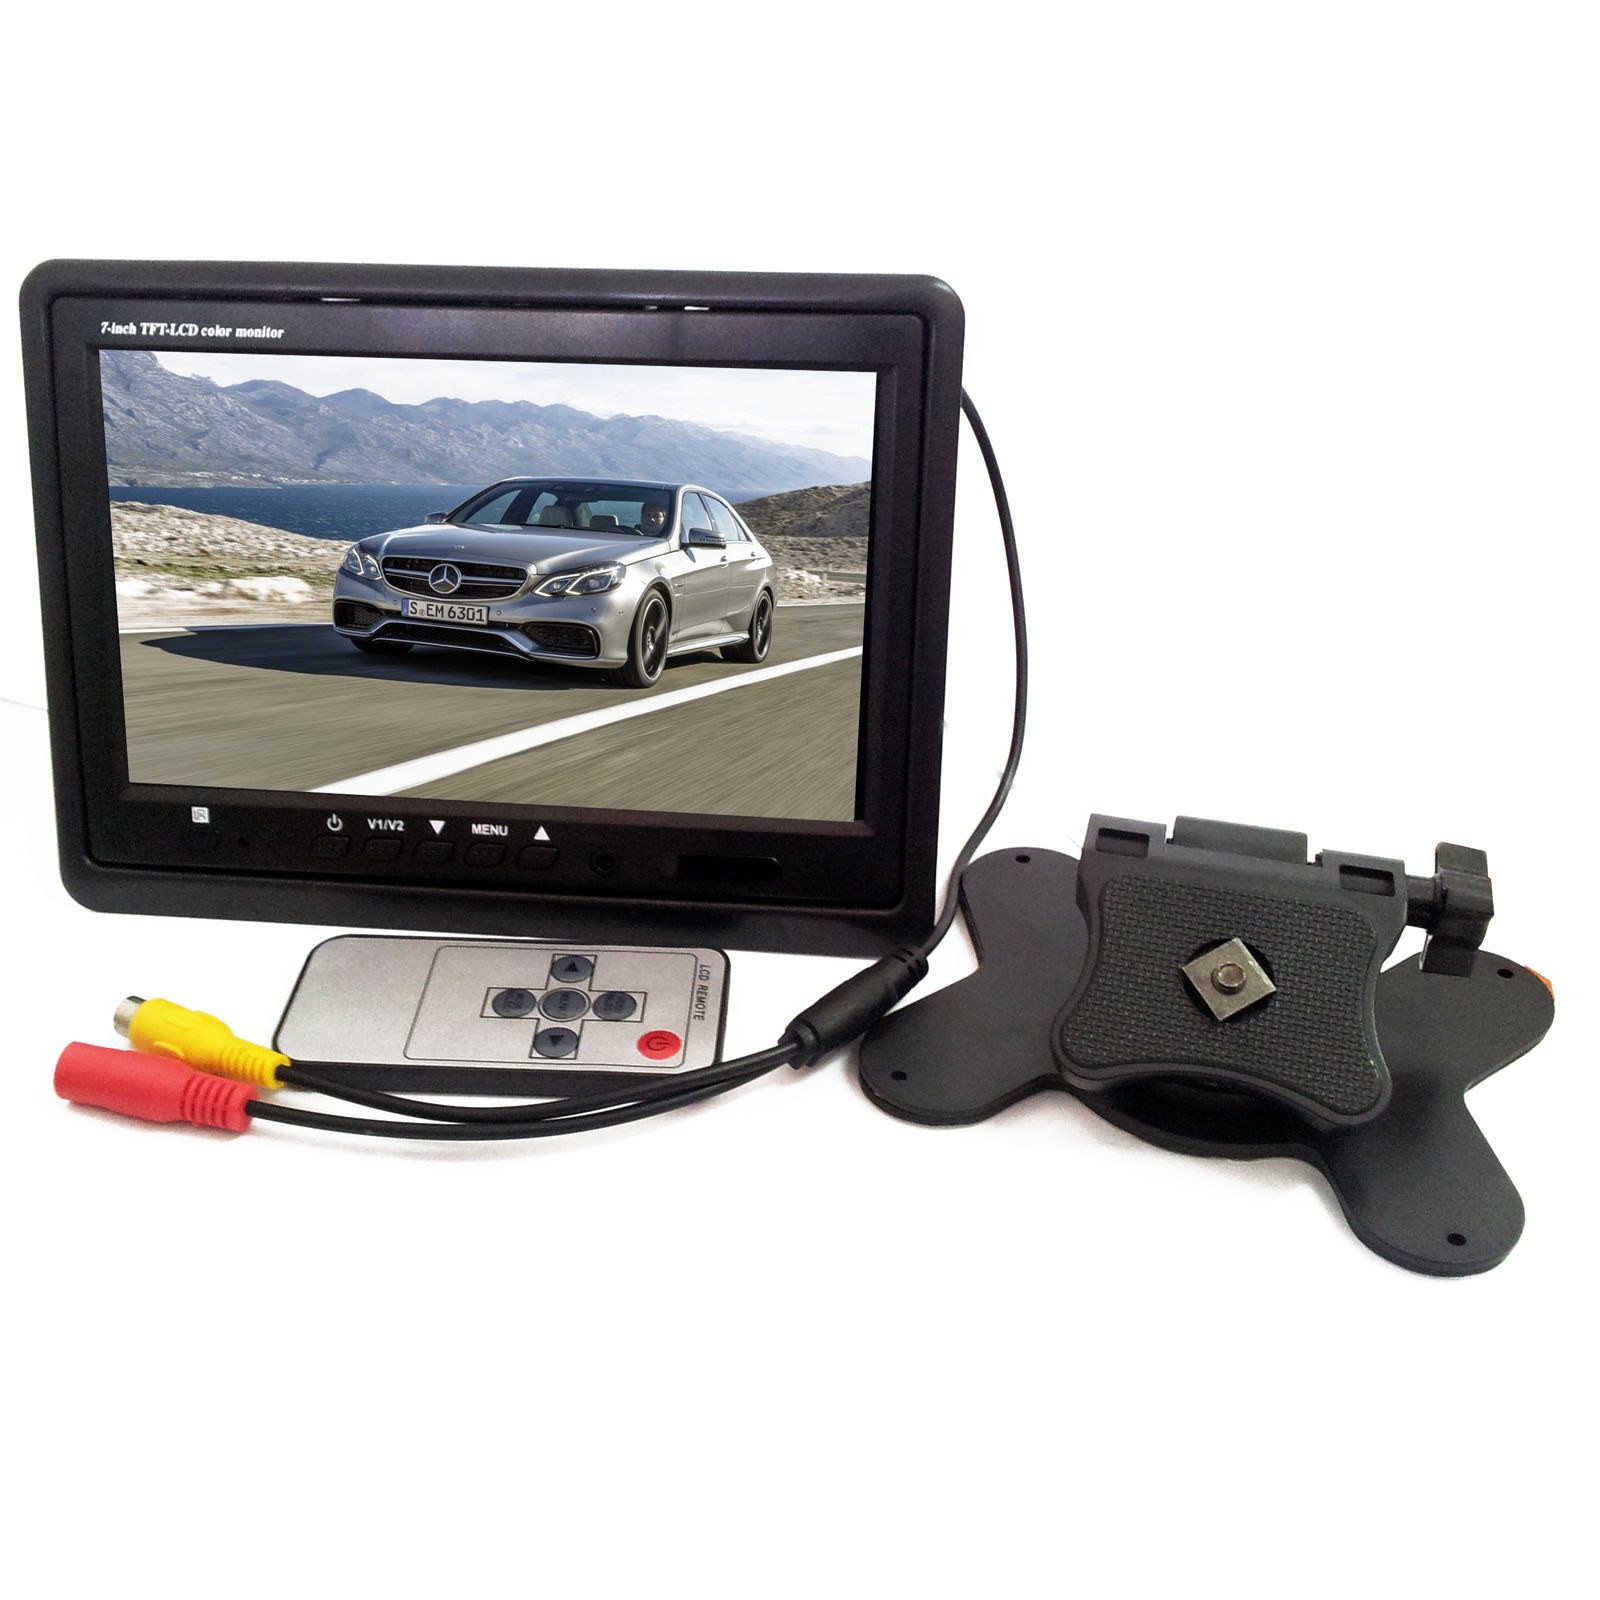 Monitor Tig LCD per Auto a Colori igital per Auto Camion o SUV, CXZX Monitor LCD 4.3 Pollici per Auto 